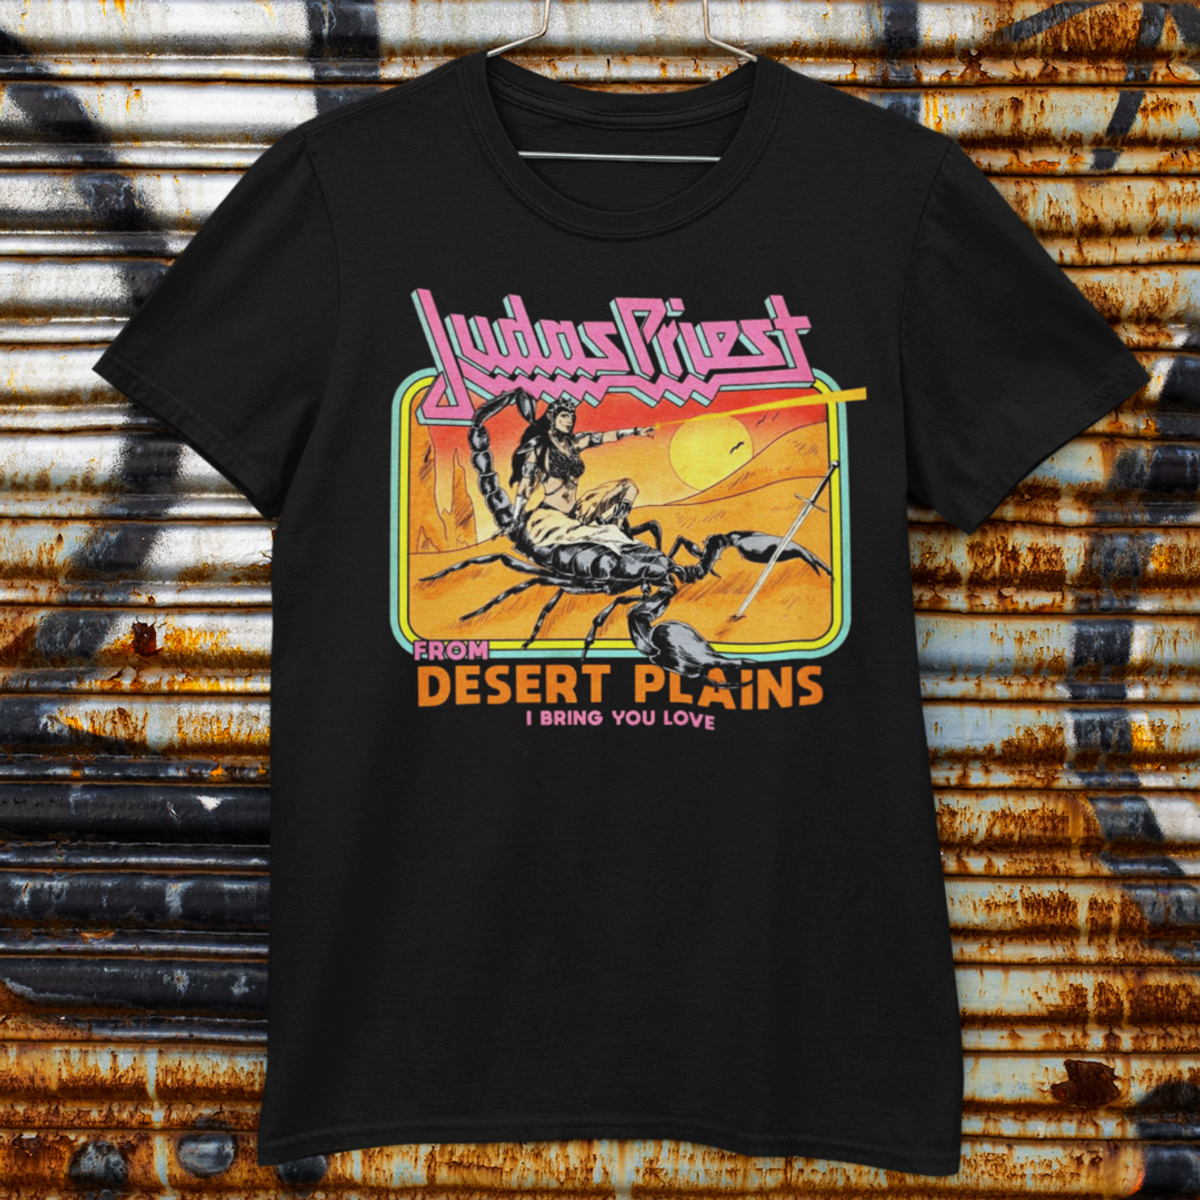 Nome do produto: Judas Priest - Desert Plains *Unissex*